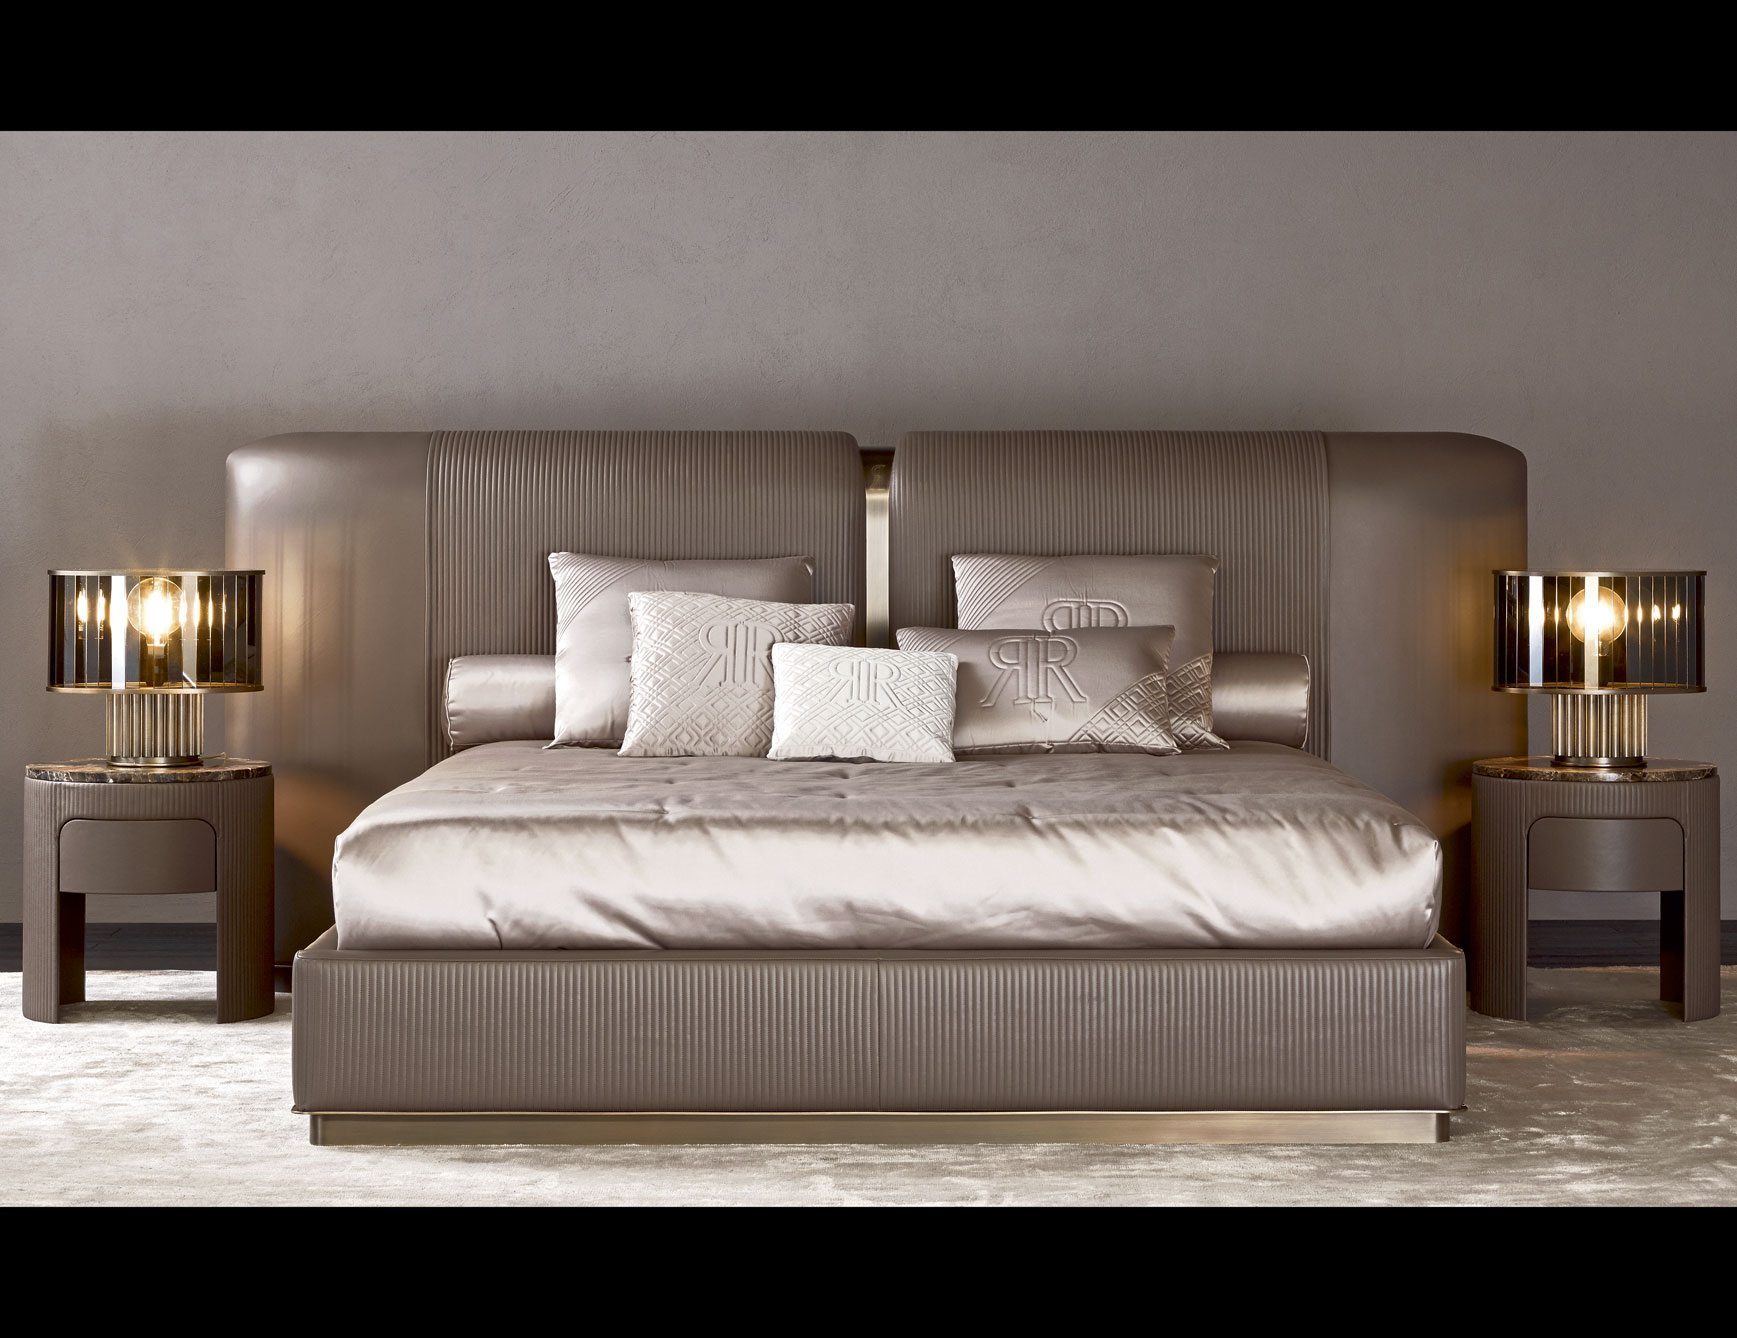 Luxury bed furniture.  NLCHEYK